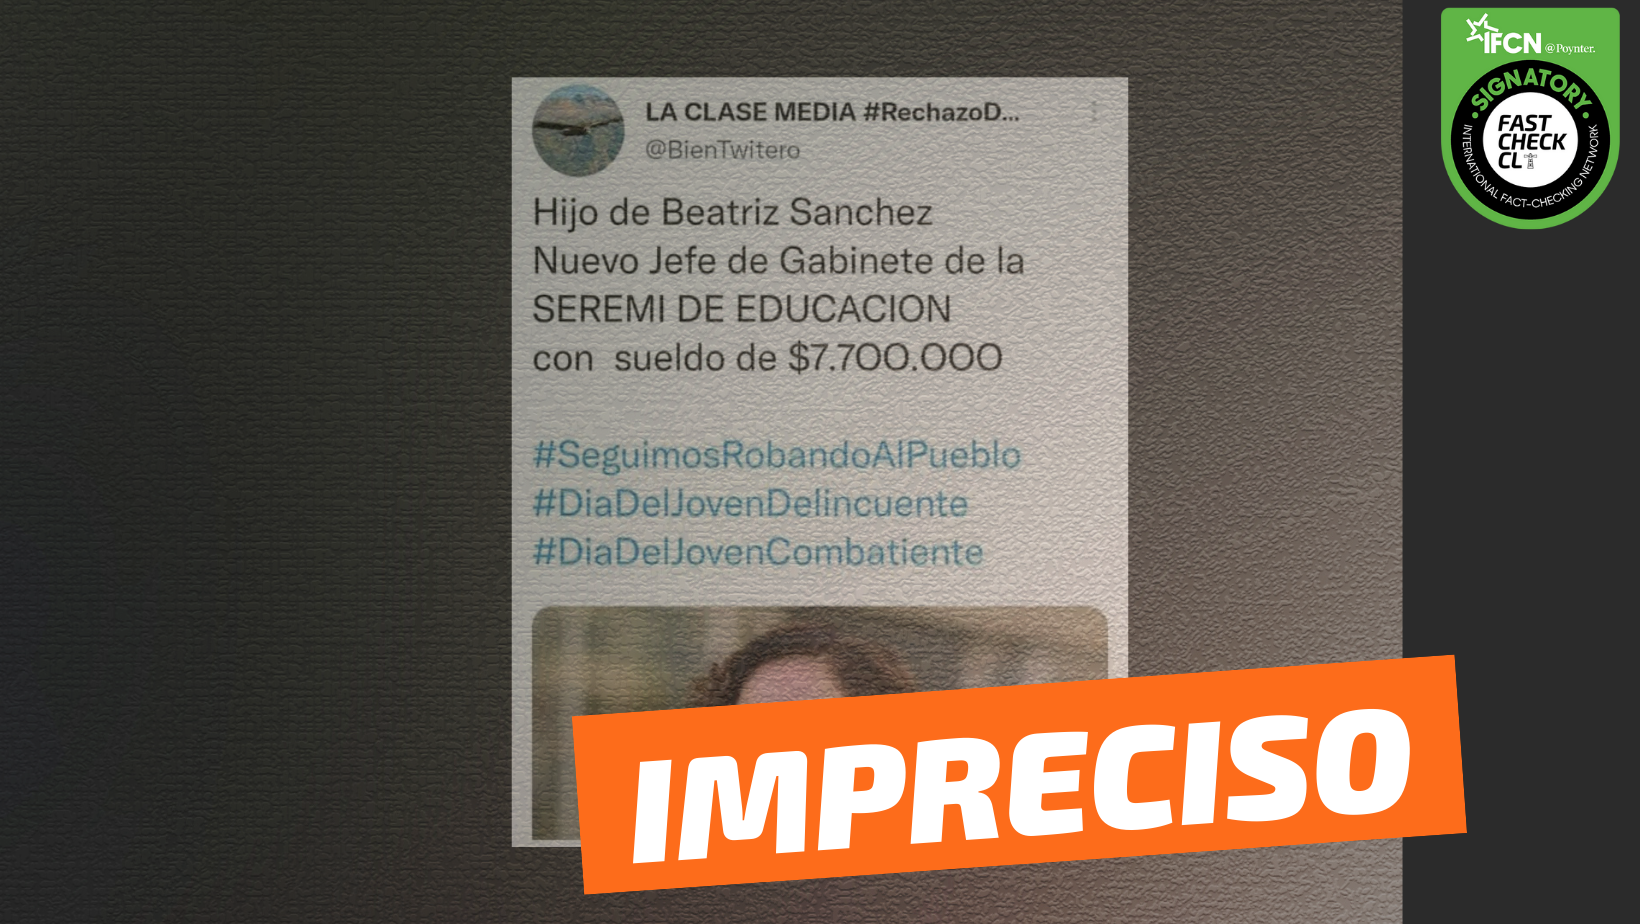 You are currently viewing “Hijo de Beatriz Sánchez, nuevo jefe de gabinete de la Seremi de Educación, con sueldo de $7.700.000”: #Impreciso